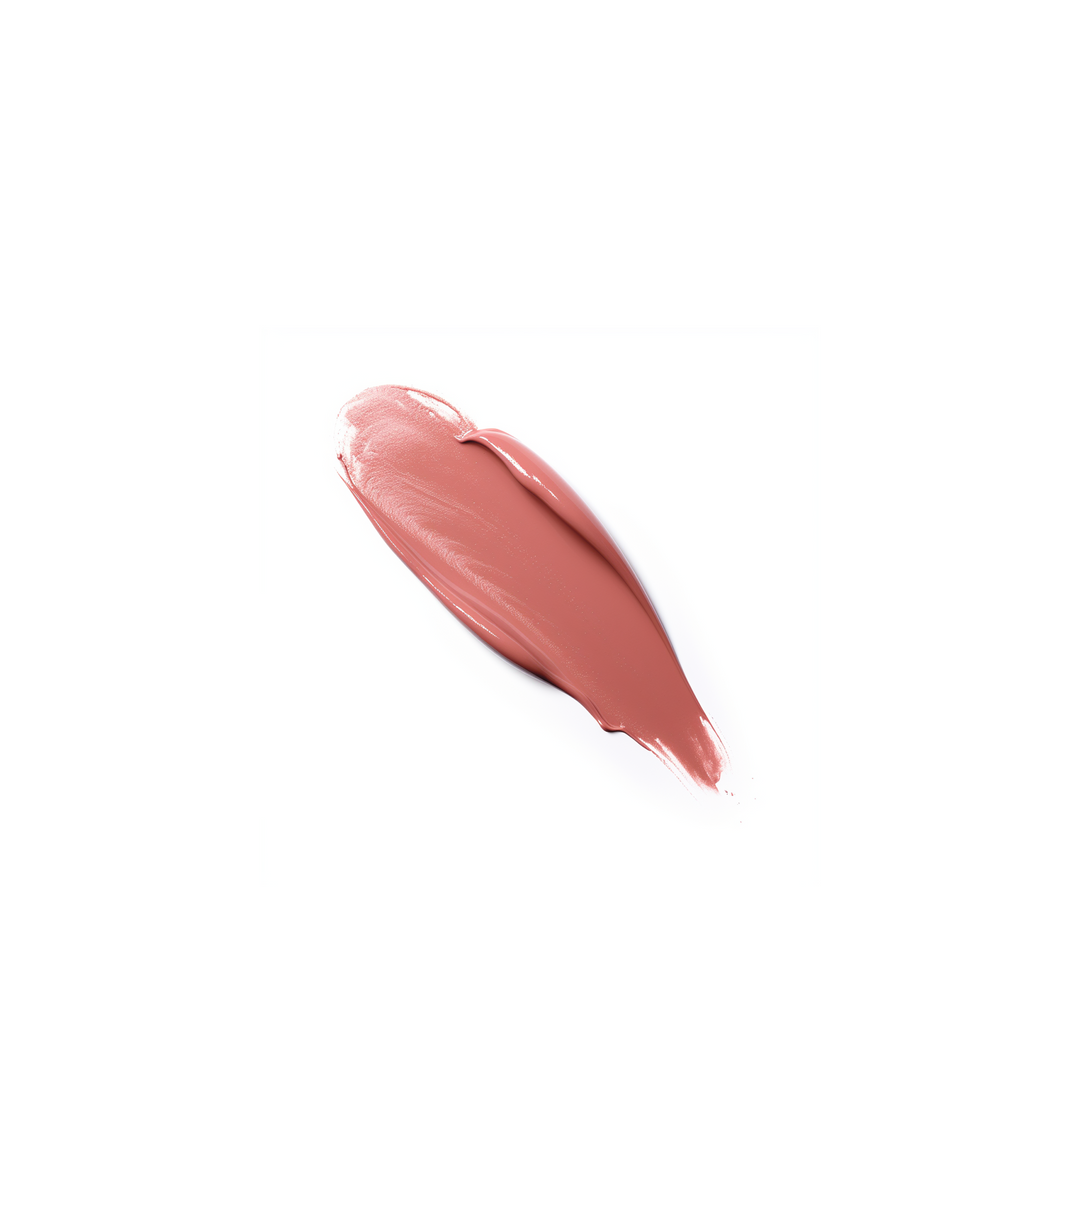 Monarch Cosmetics whisper Liquid Lipstick